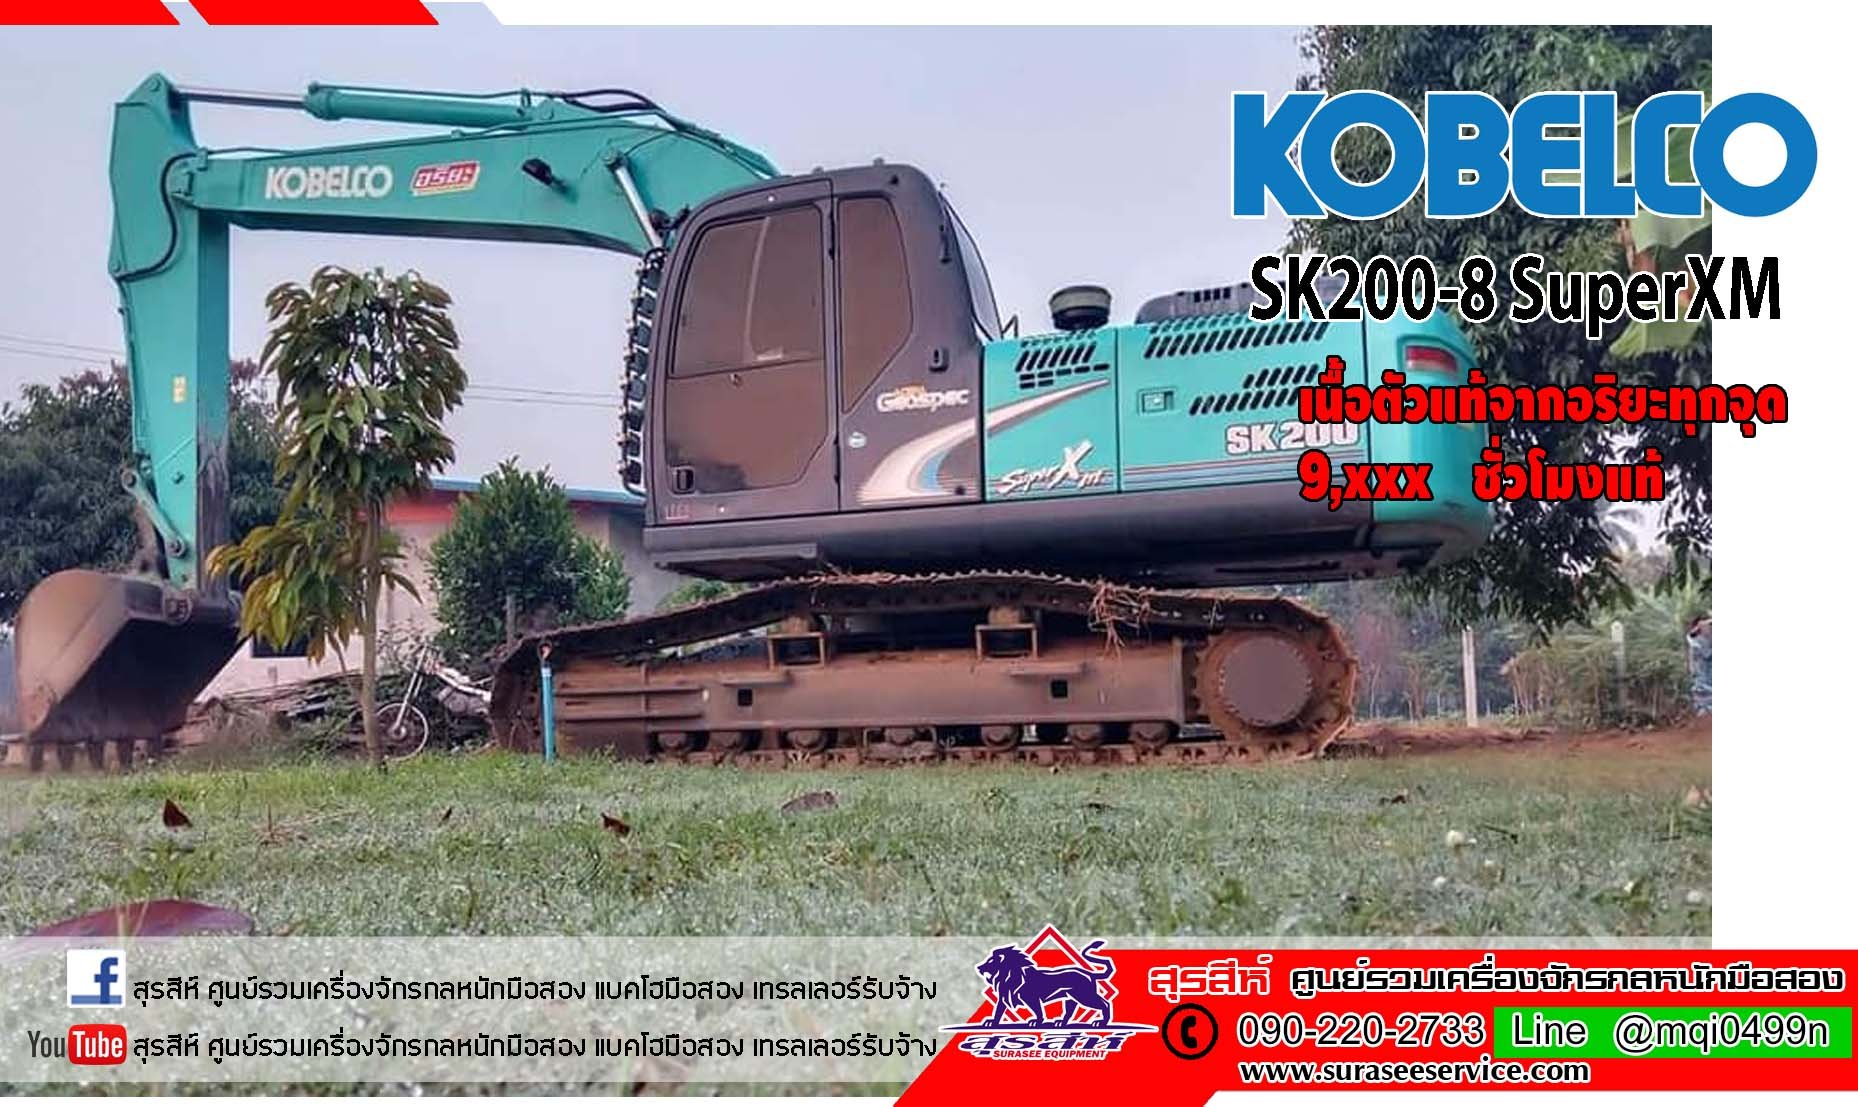 แบคโฮมือสอง   KOBELCO SK200-8 Super xm เฟรมถาด 9,000 ชั่วโมง